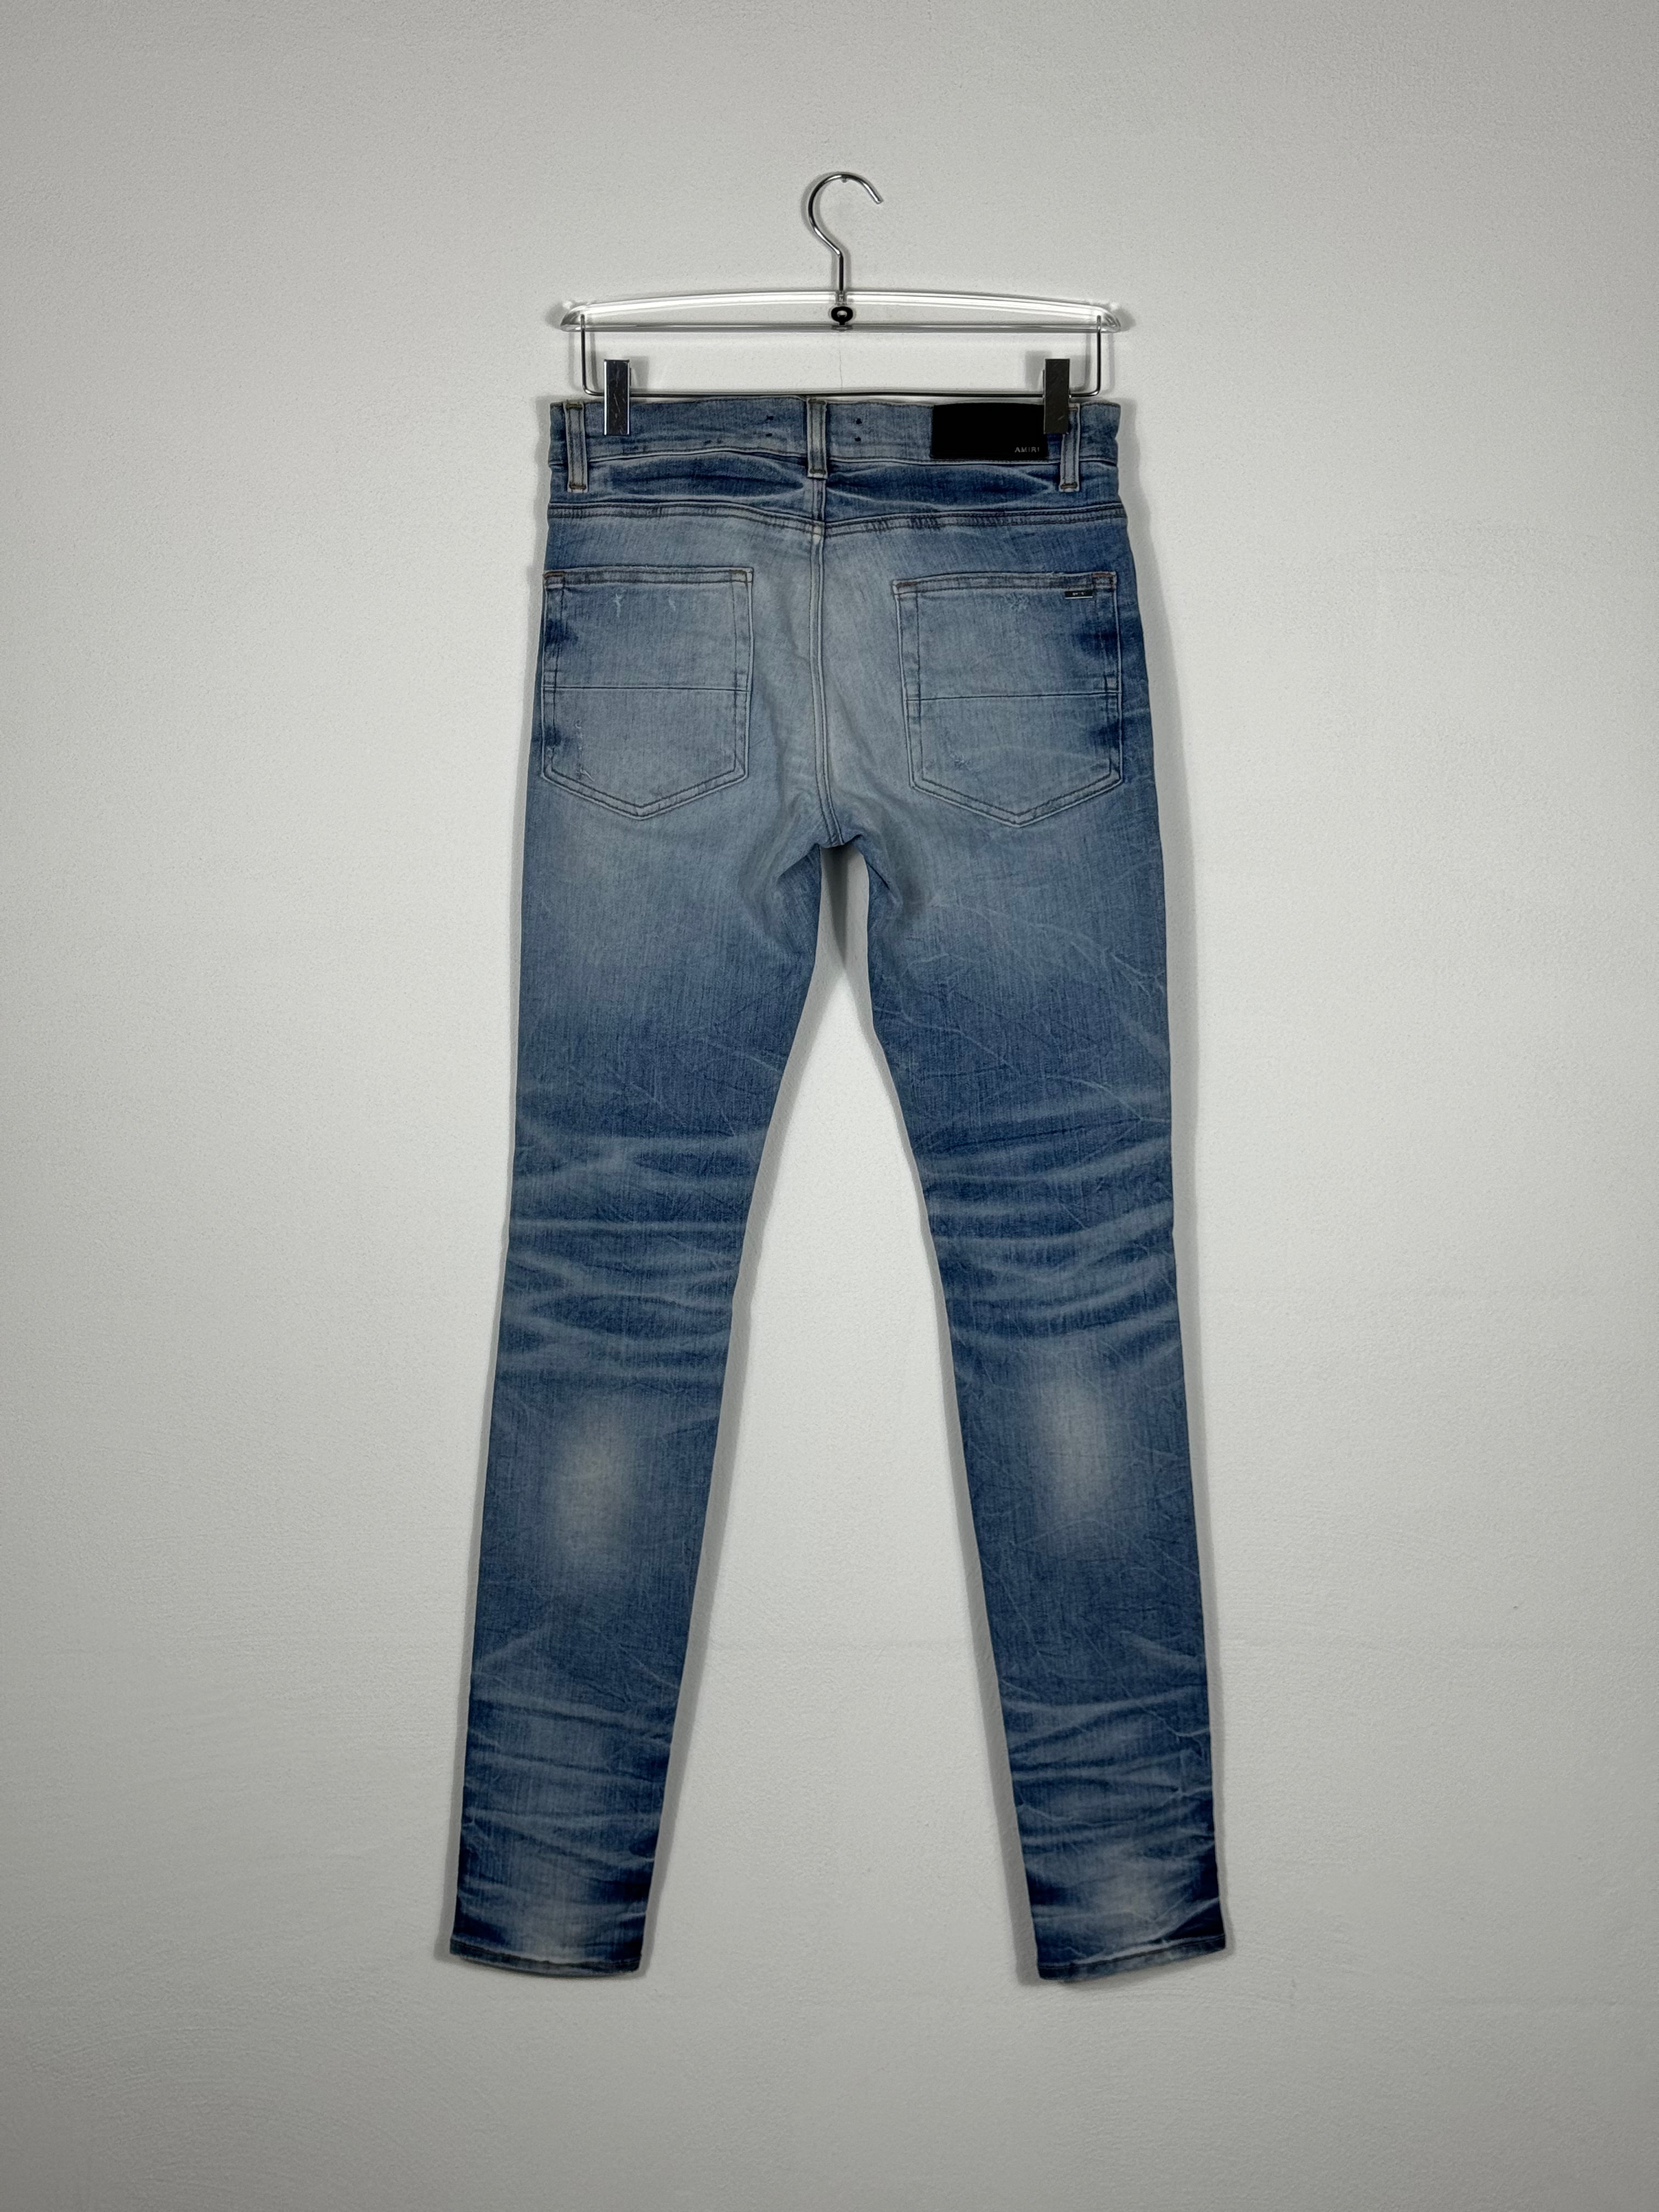 Skinny Jeans With Rhinestones by Sfera Ebbasta